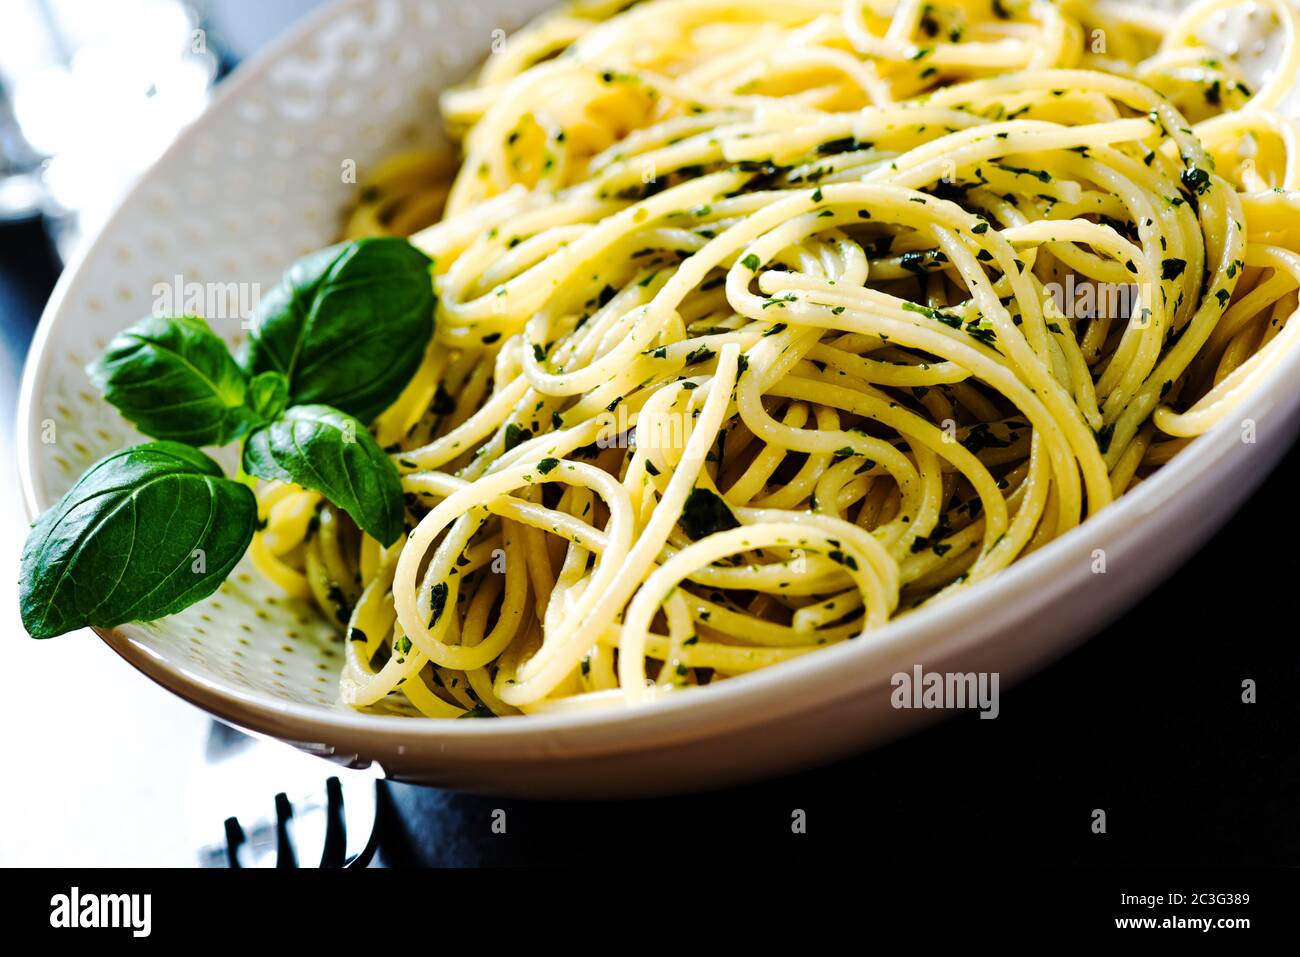 spaghetti pasta in a bowl Stock Photo